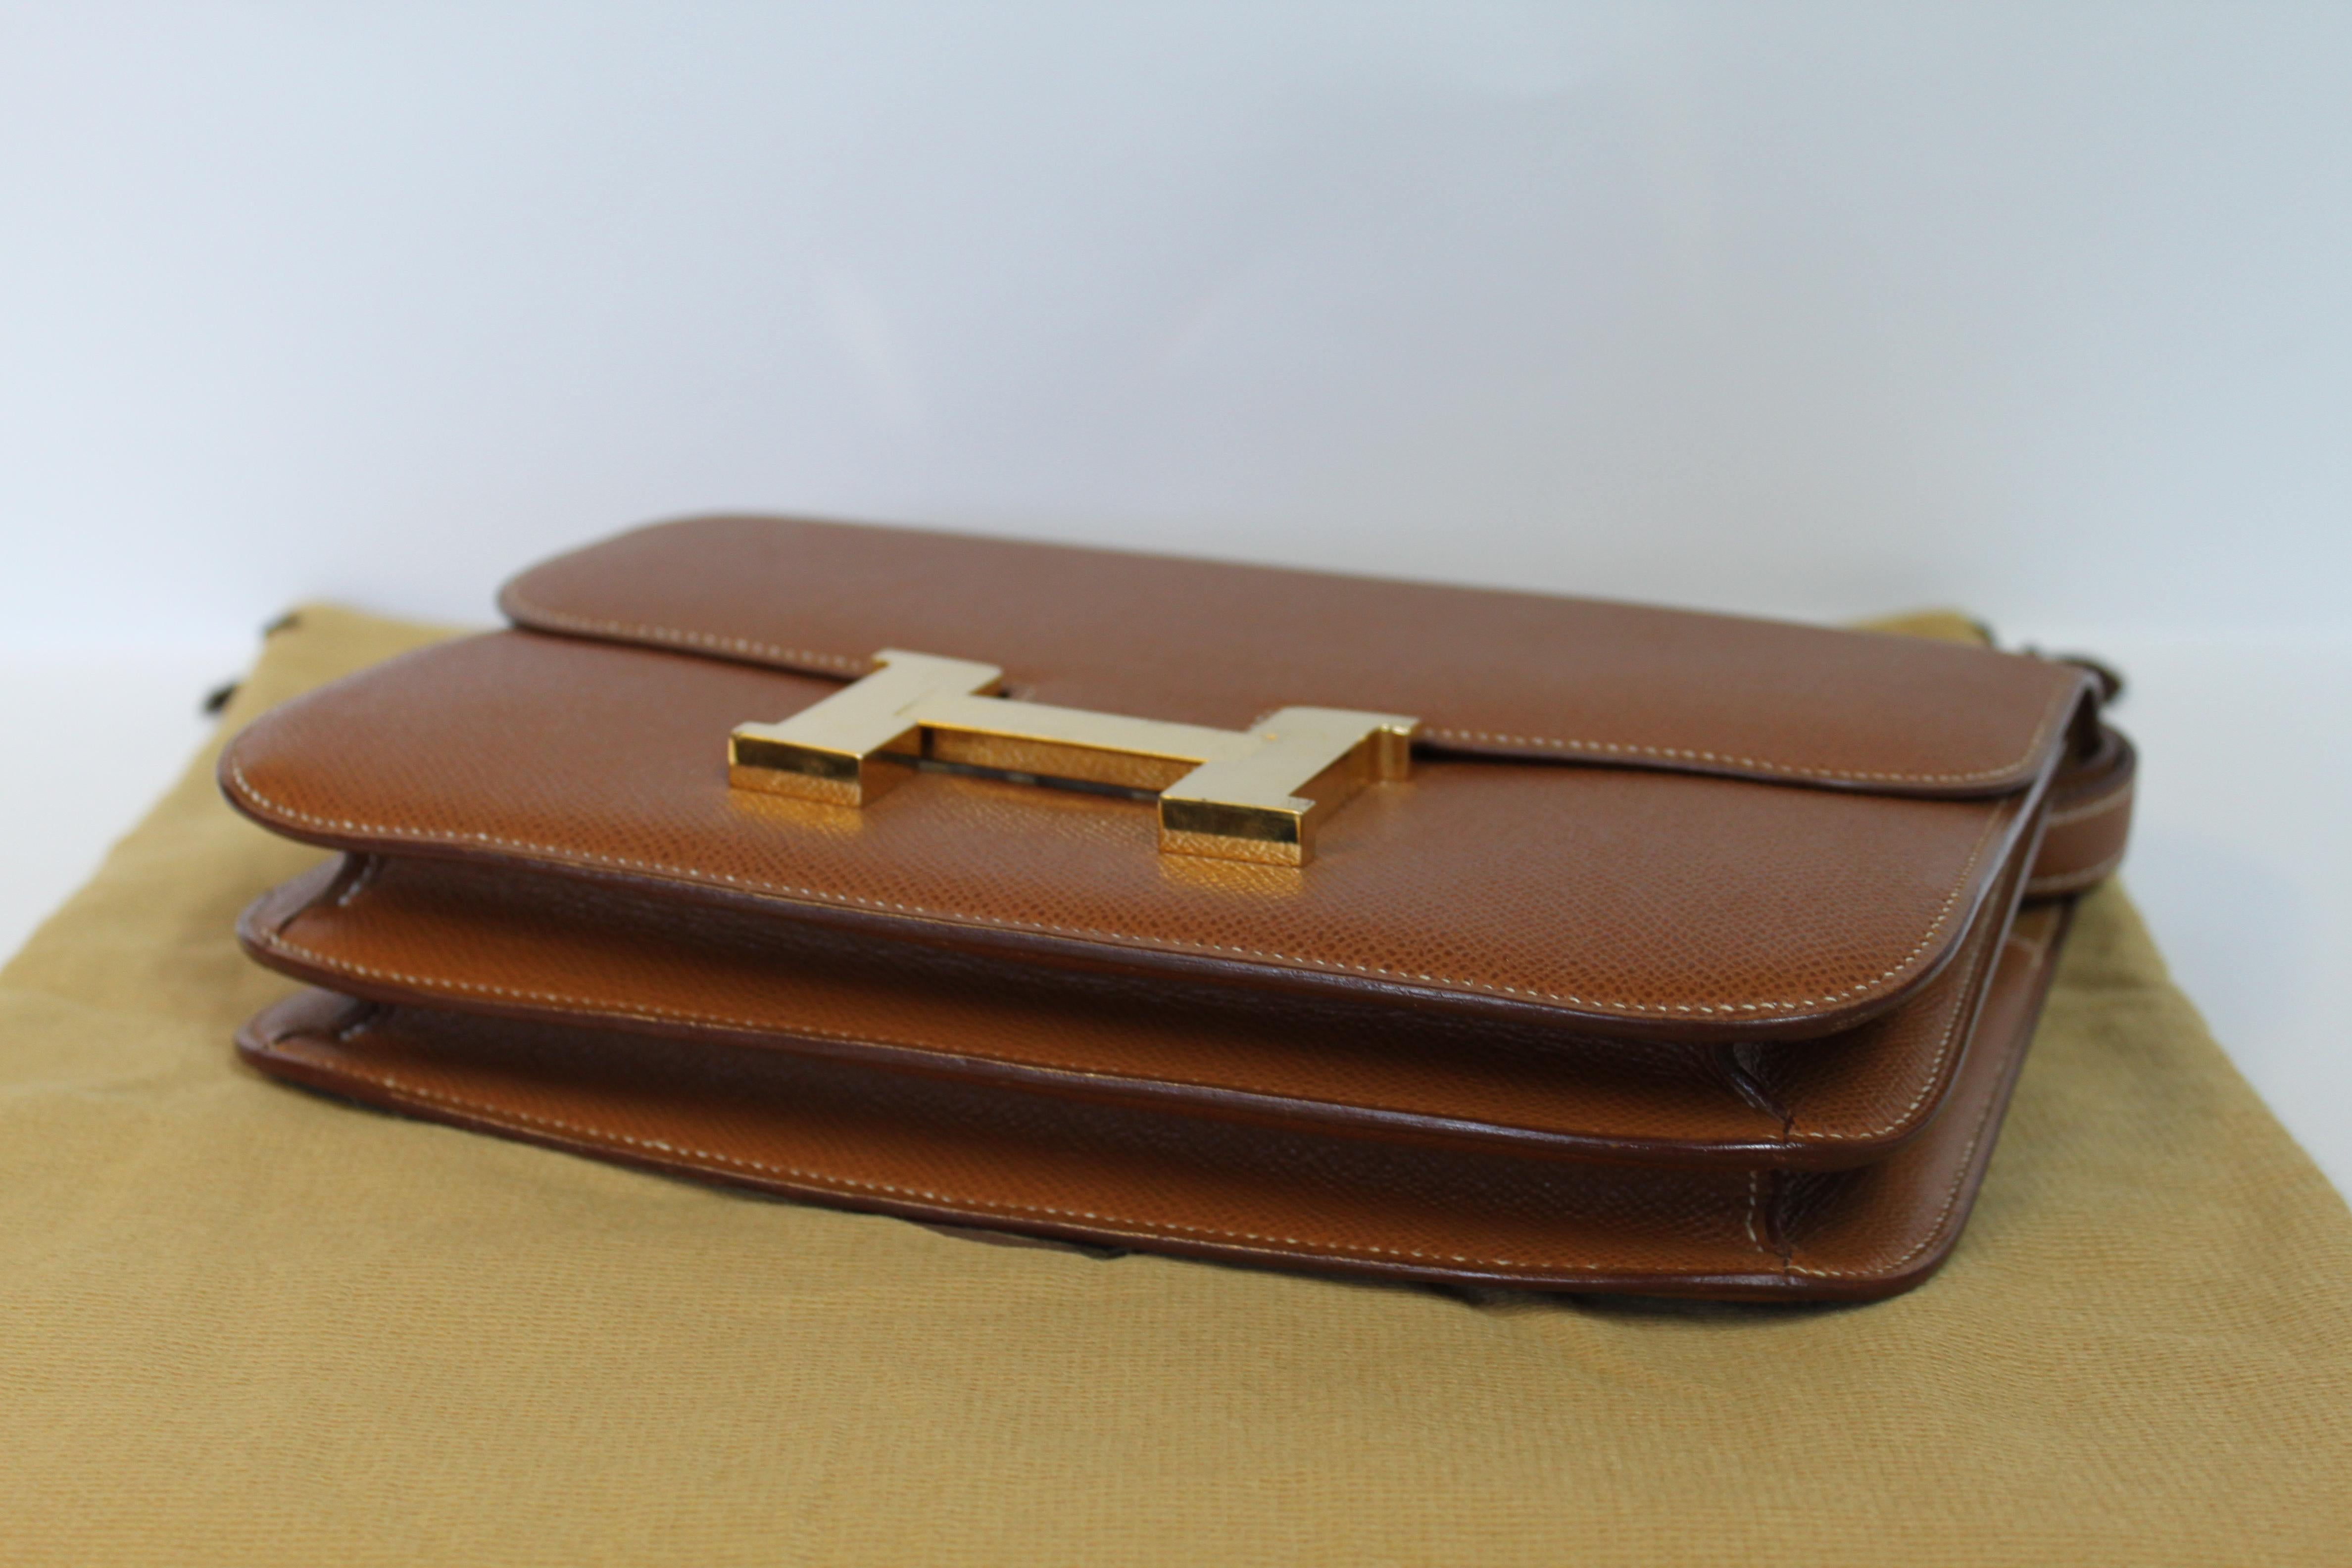 Hermes Constance 24 Shoulder Bag brown/tan epsom leather with gold Hardware For Sale 2